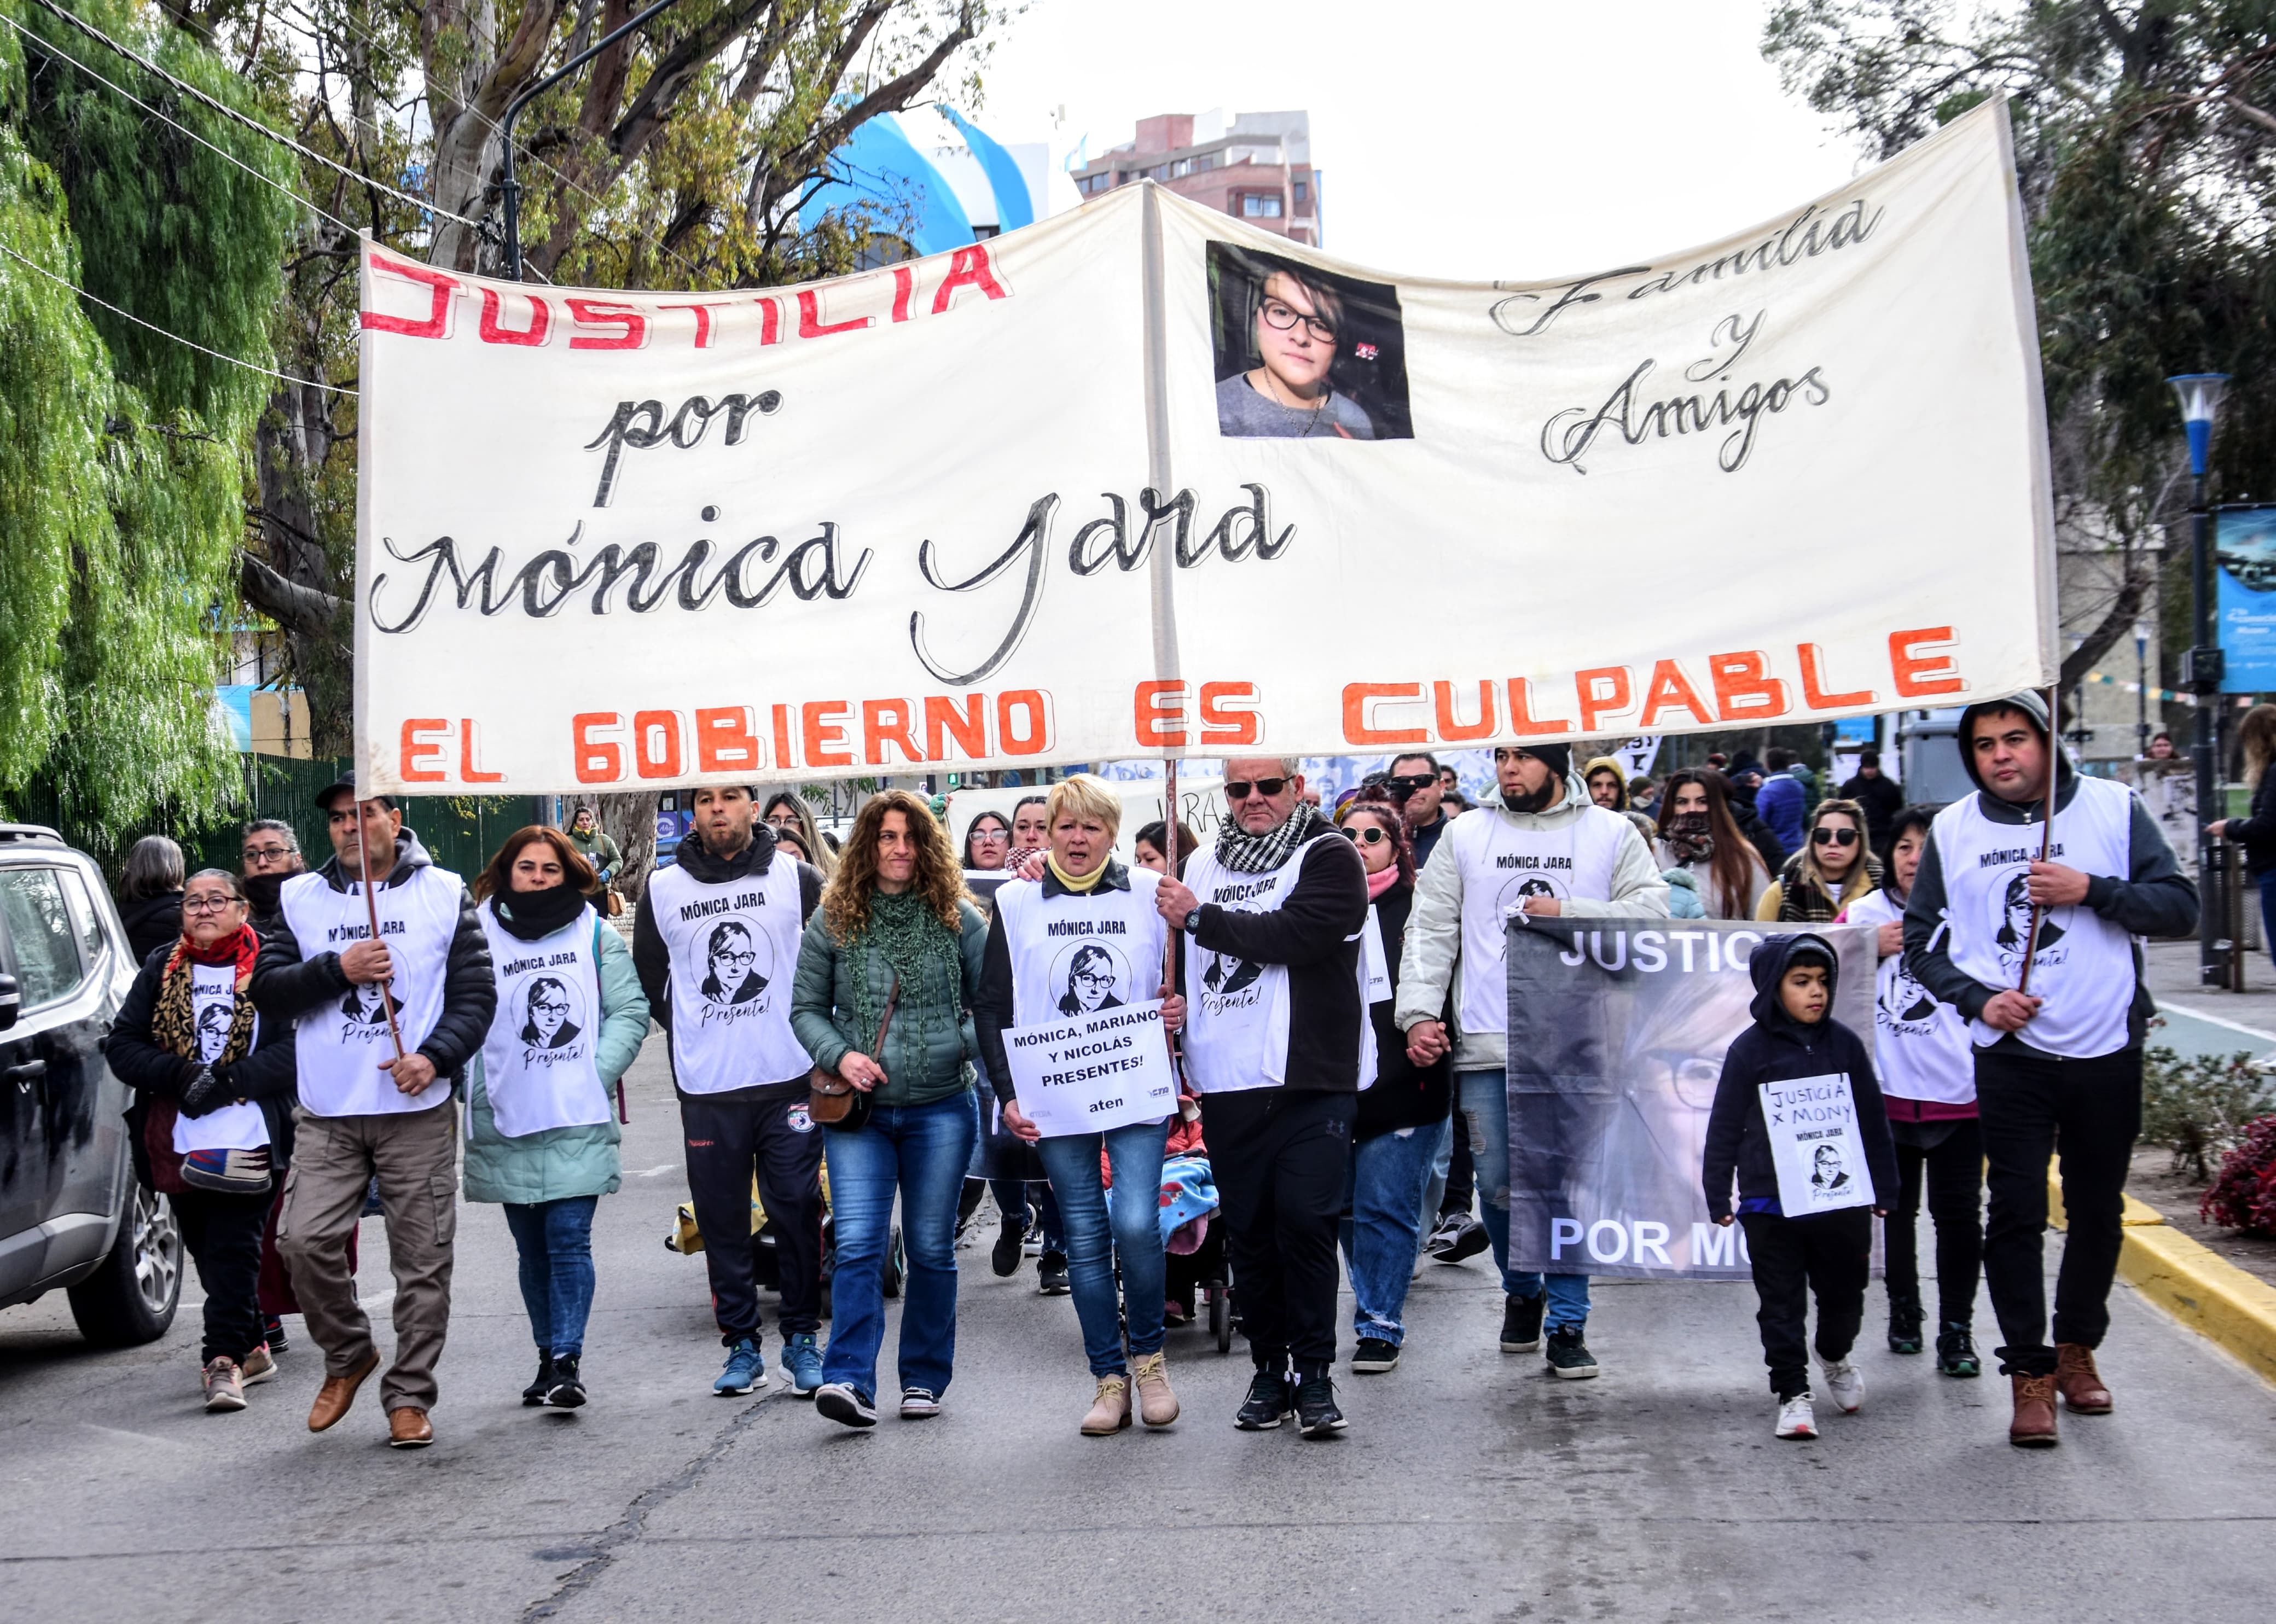 Justicia por Mónica Jara, el pedido por la maestra que murió en la explosión. Foto: Cecilia Maletti.